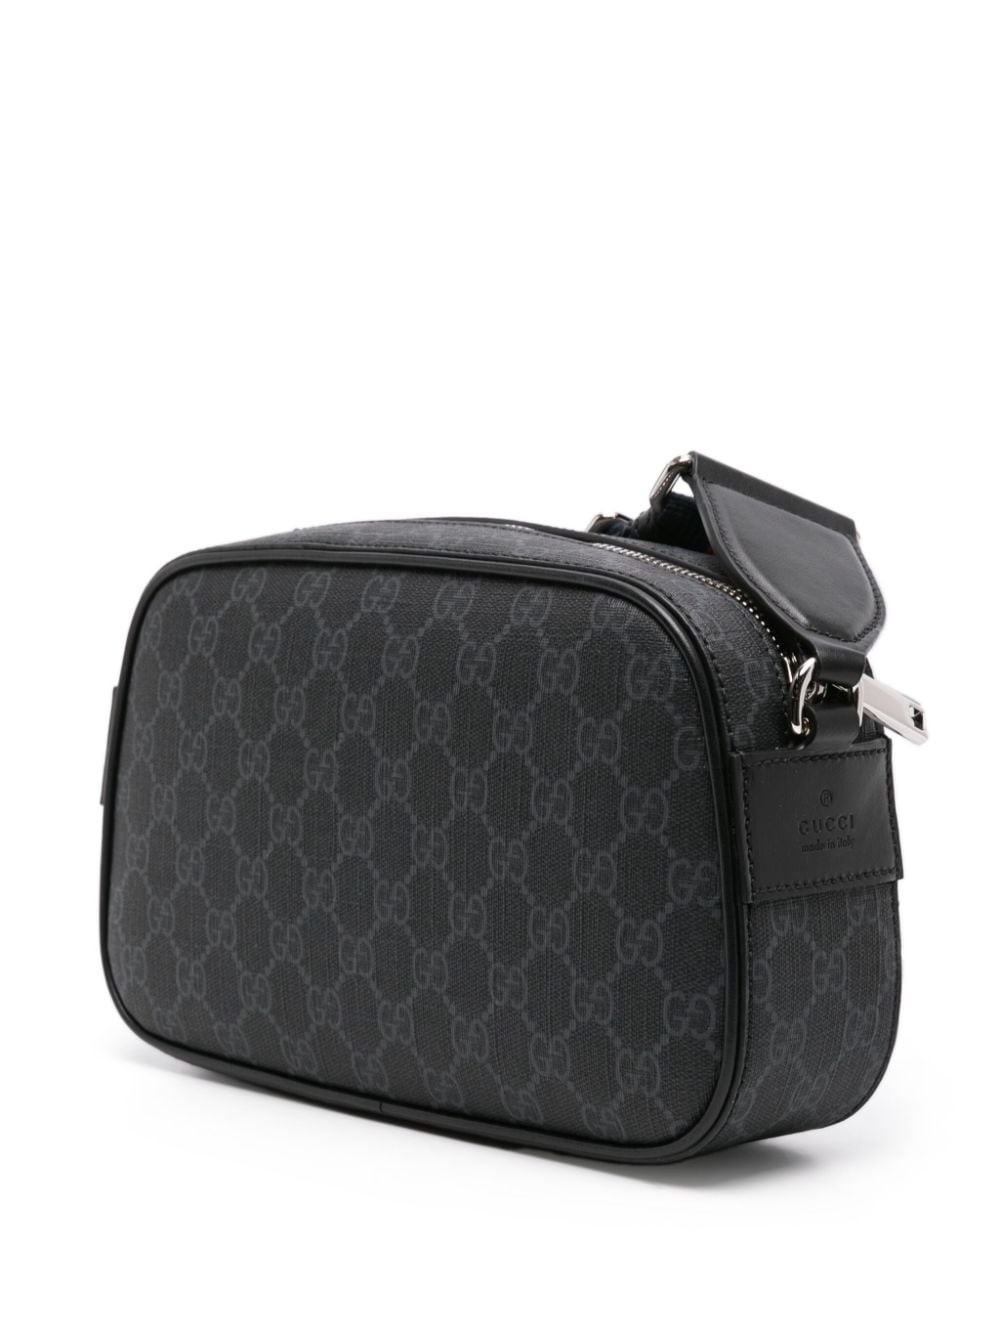 GG Supreme leather messenger bag - 3